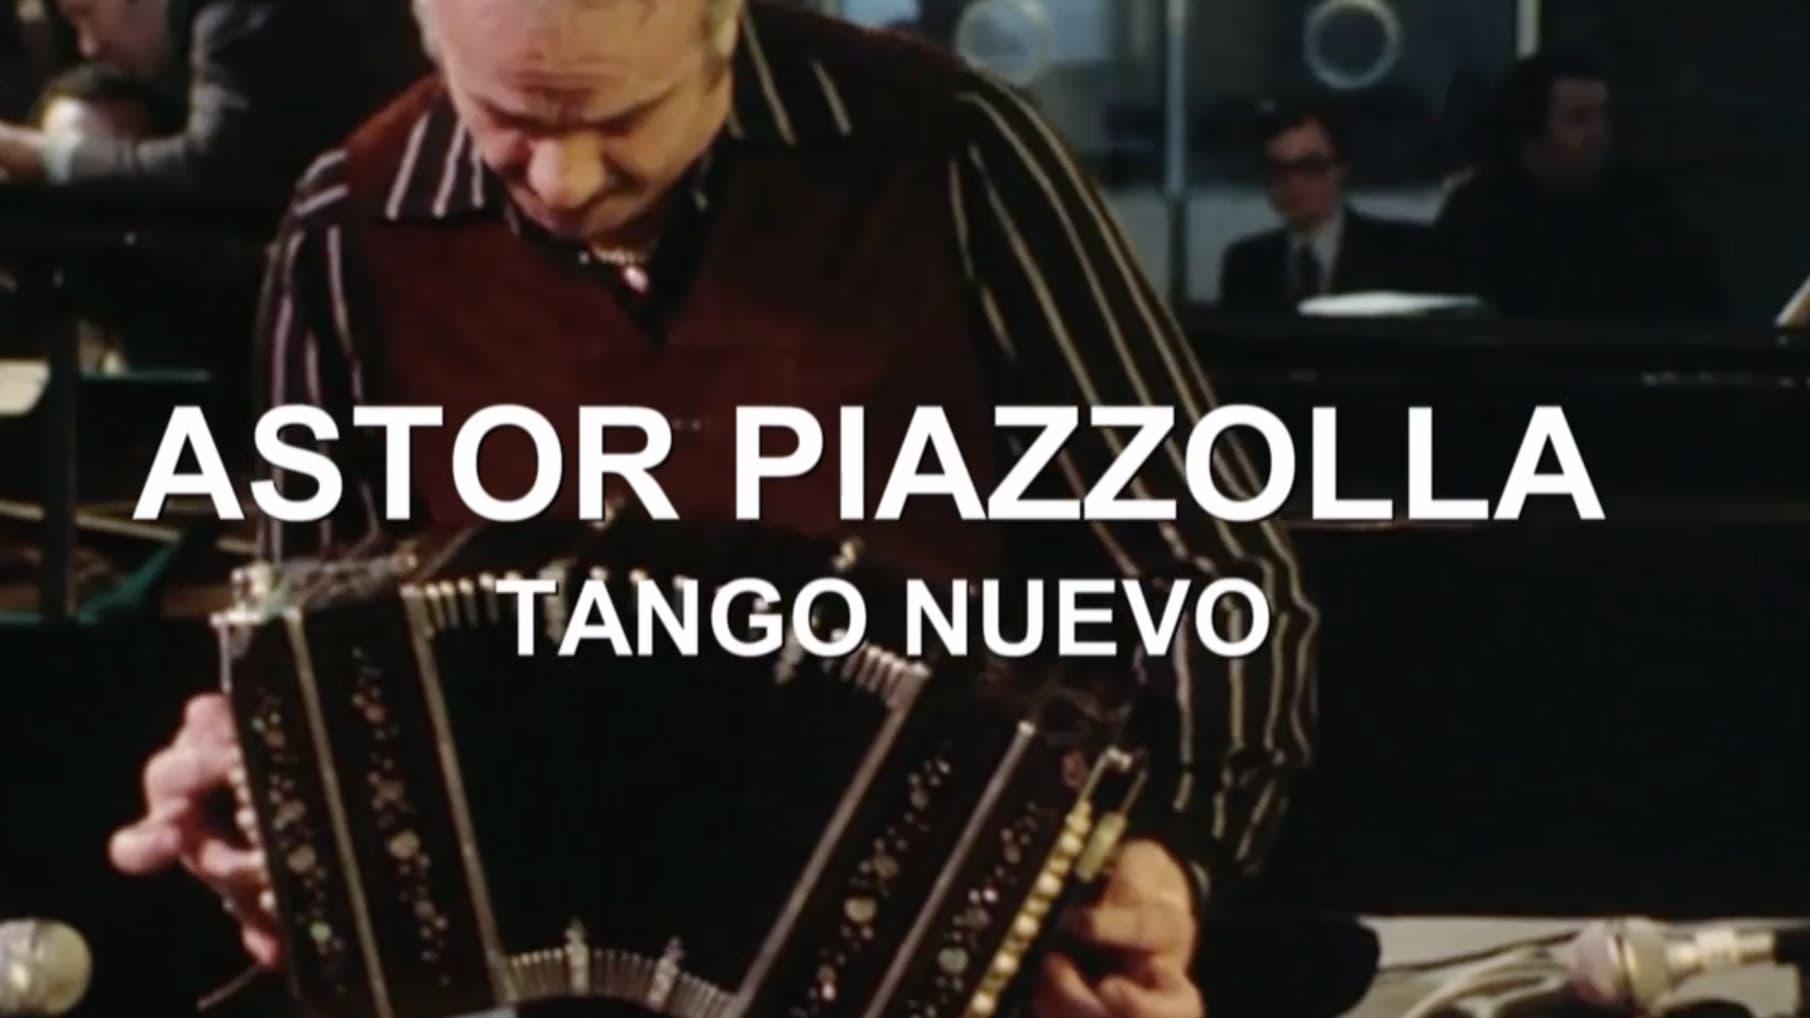 Astor Piazzolla: tango nuevo backdrop